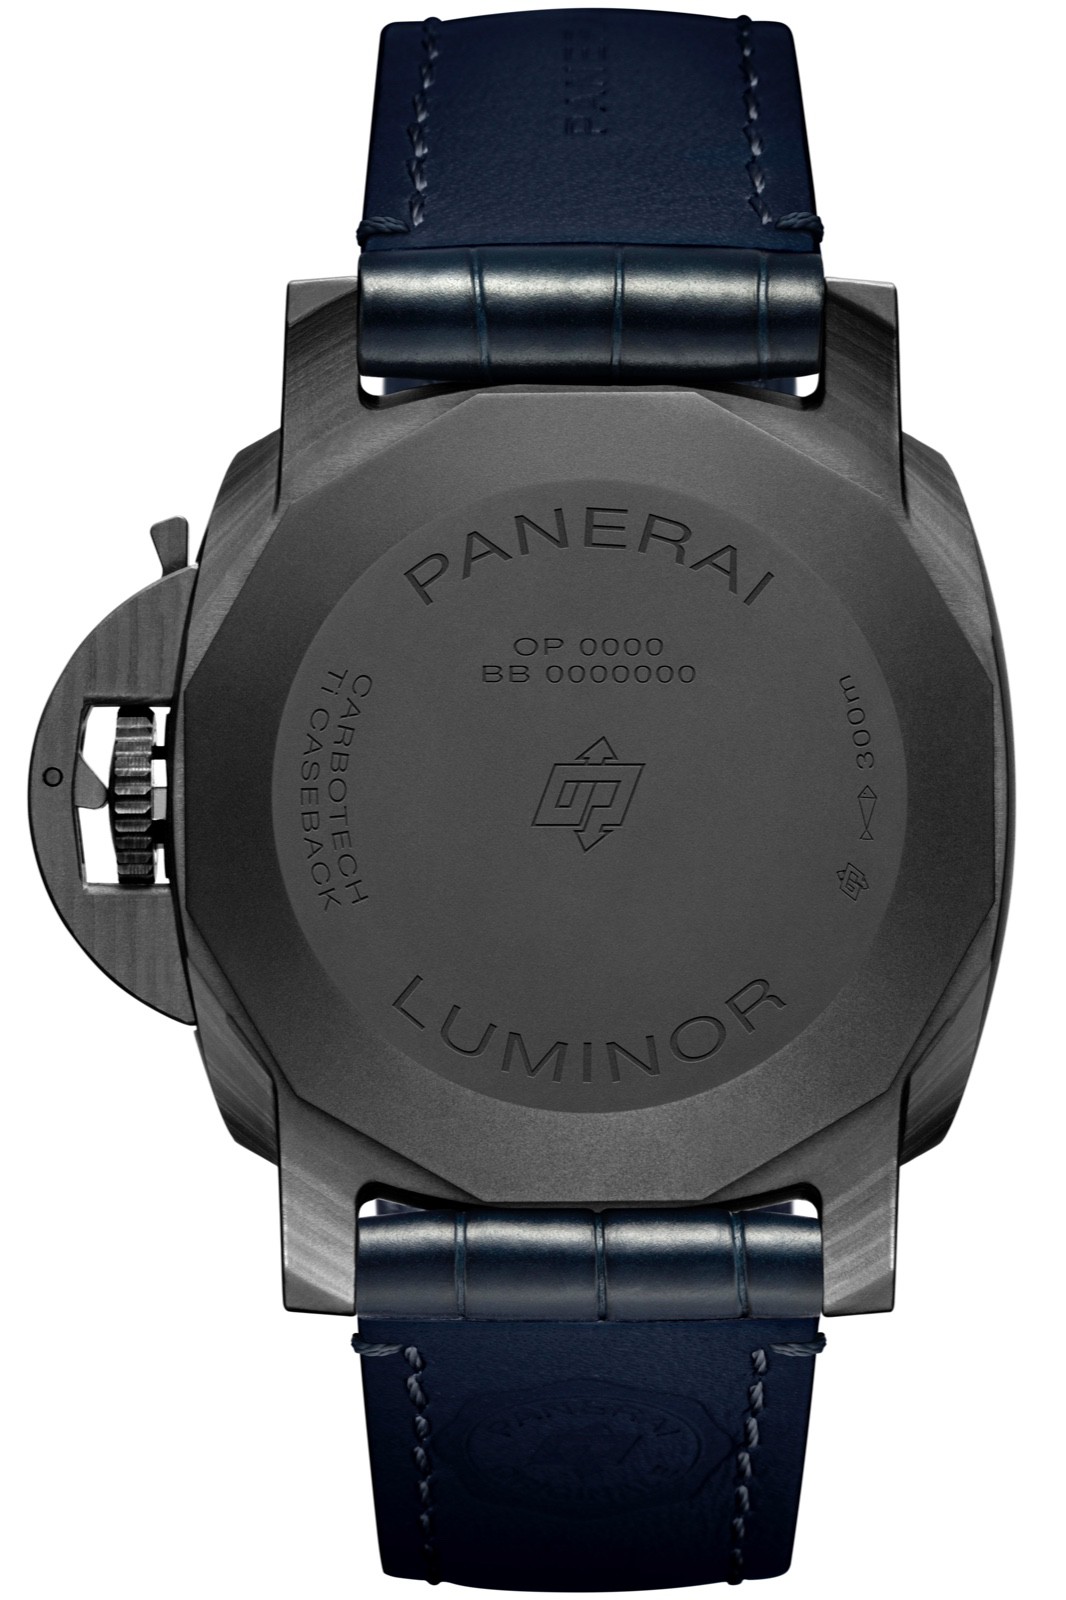 2. 沛纳海Luminor Marina Carbotech™ Blu Notte庐米诺系列碳纤维腕表 - 44毫米 （PAM01664）.jpg